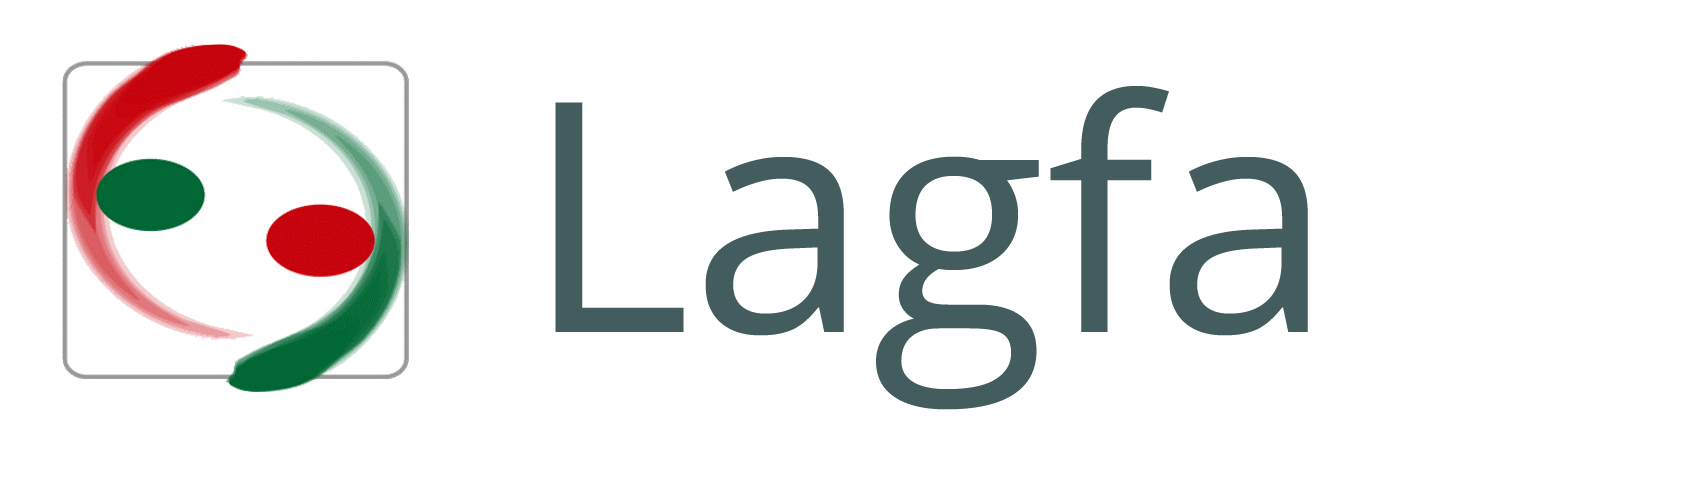 Logo LAGFA Brandenburg. Das Wort LAGFA in dunkel grau-grüner Schriftfarbe. Links daneben zwei Punkte und zwei geschwungene Striche in jeweils rot und grün abwechselnd.